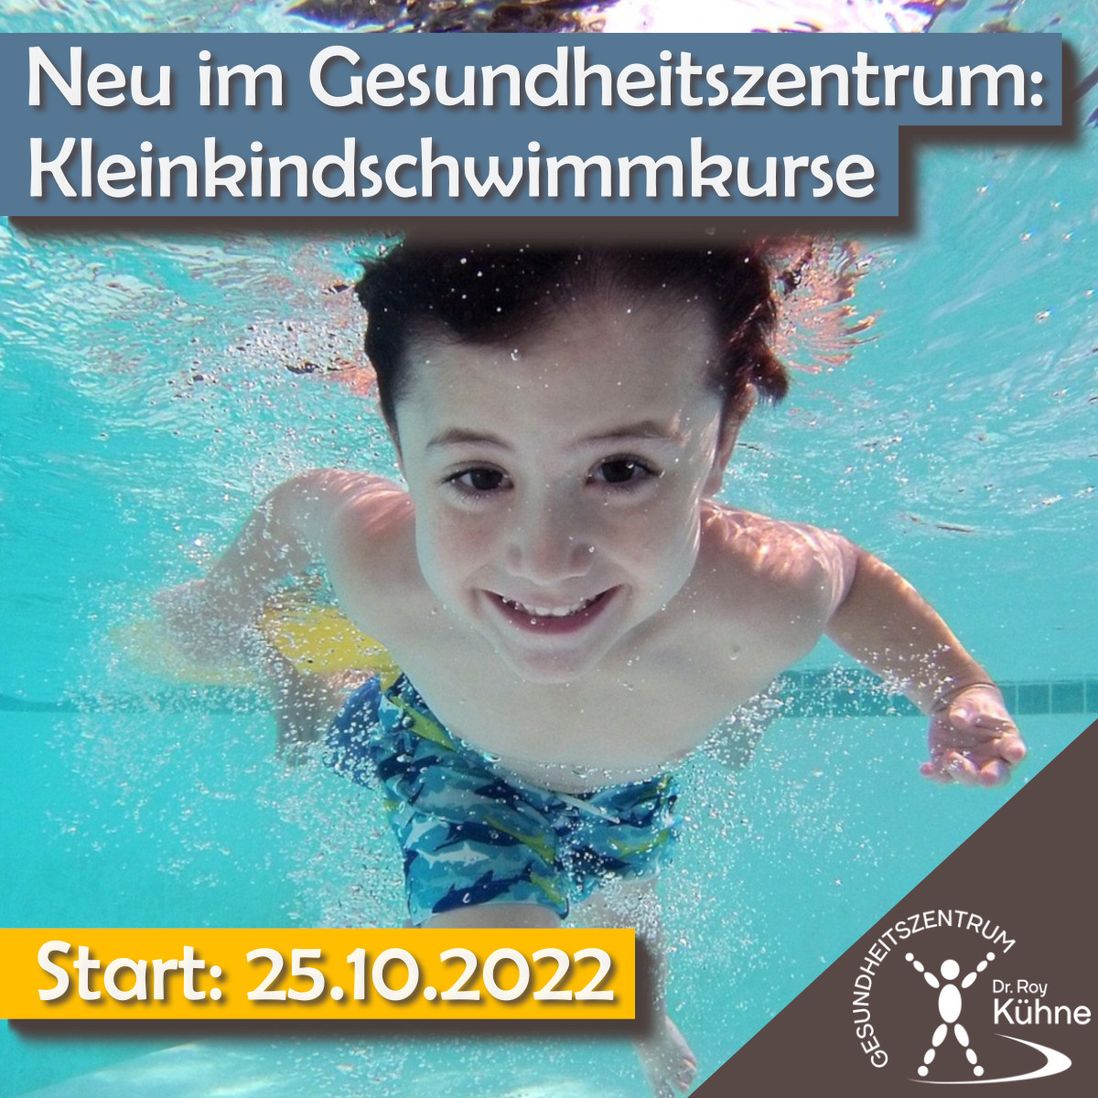 Gesundheitszentrum Dr. Roy Kühne Northeim, Kleinkindschwimmkurse